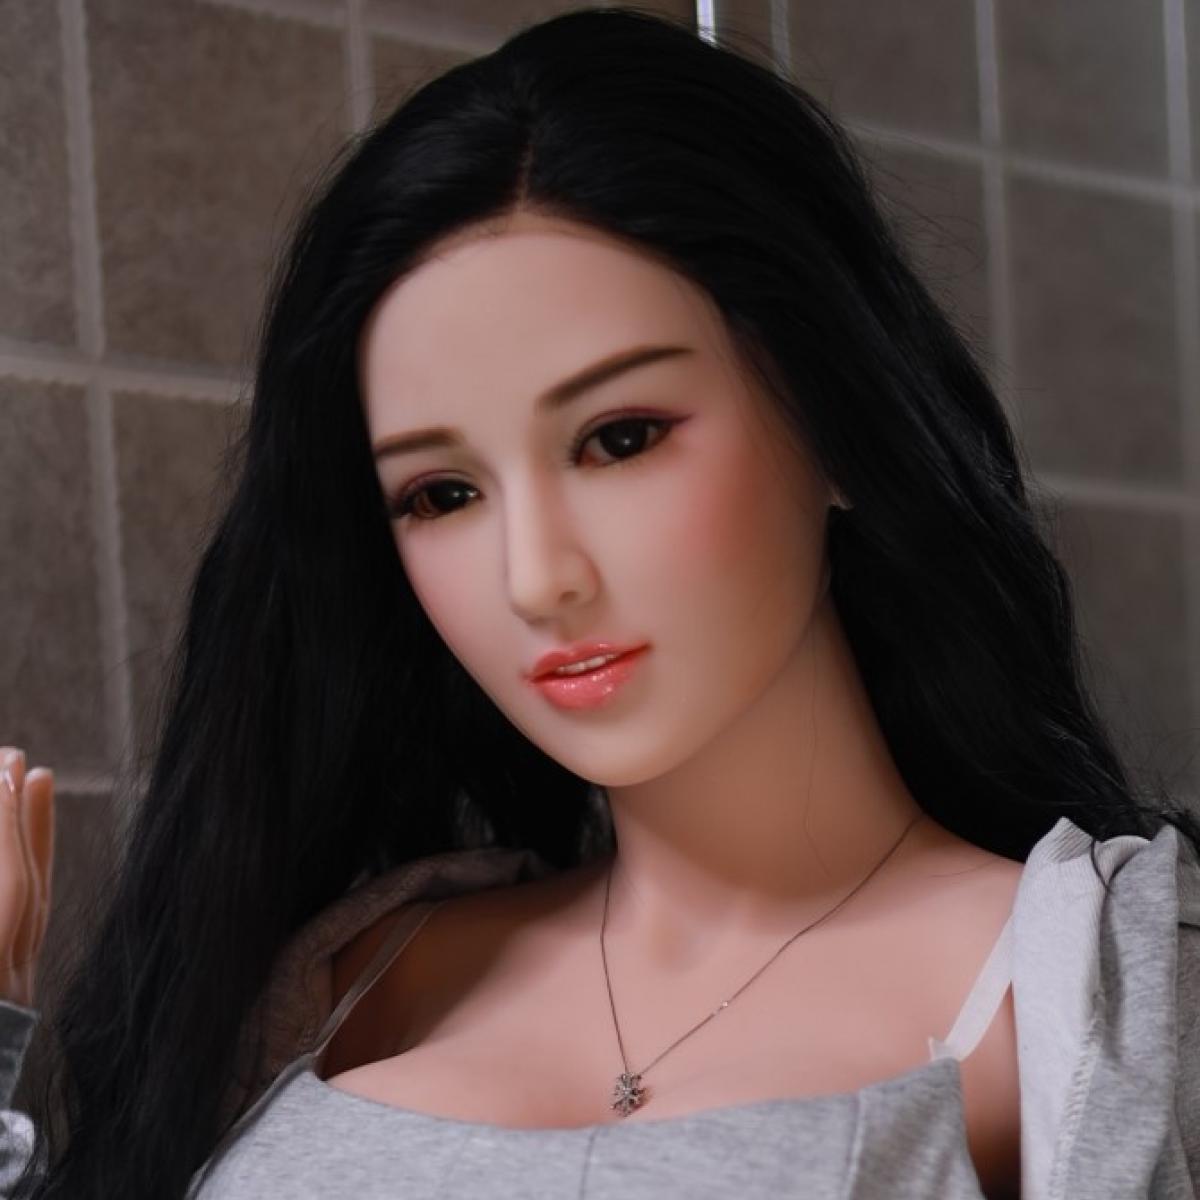 Neodoll Sugarbabe Head - Sex Doll Head - M16 Compatible - Silicon color